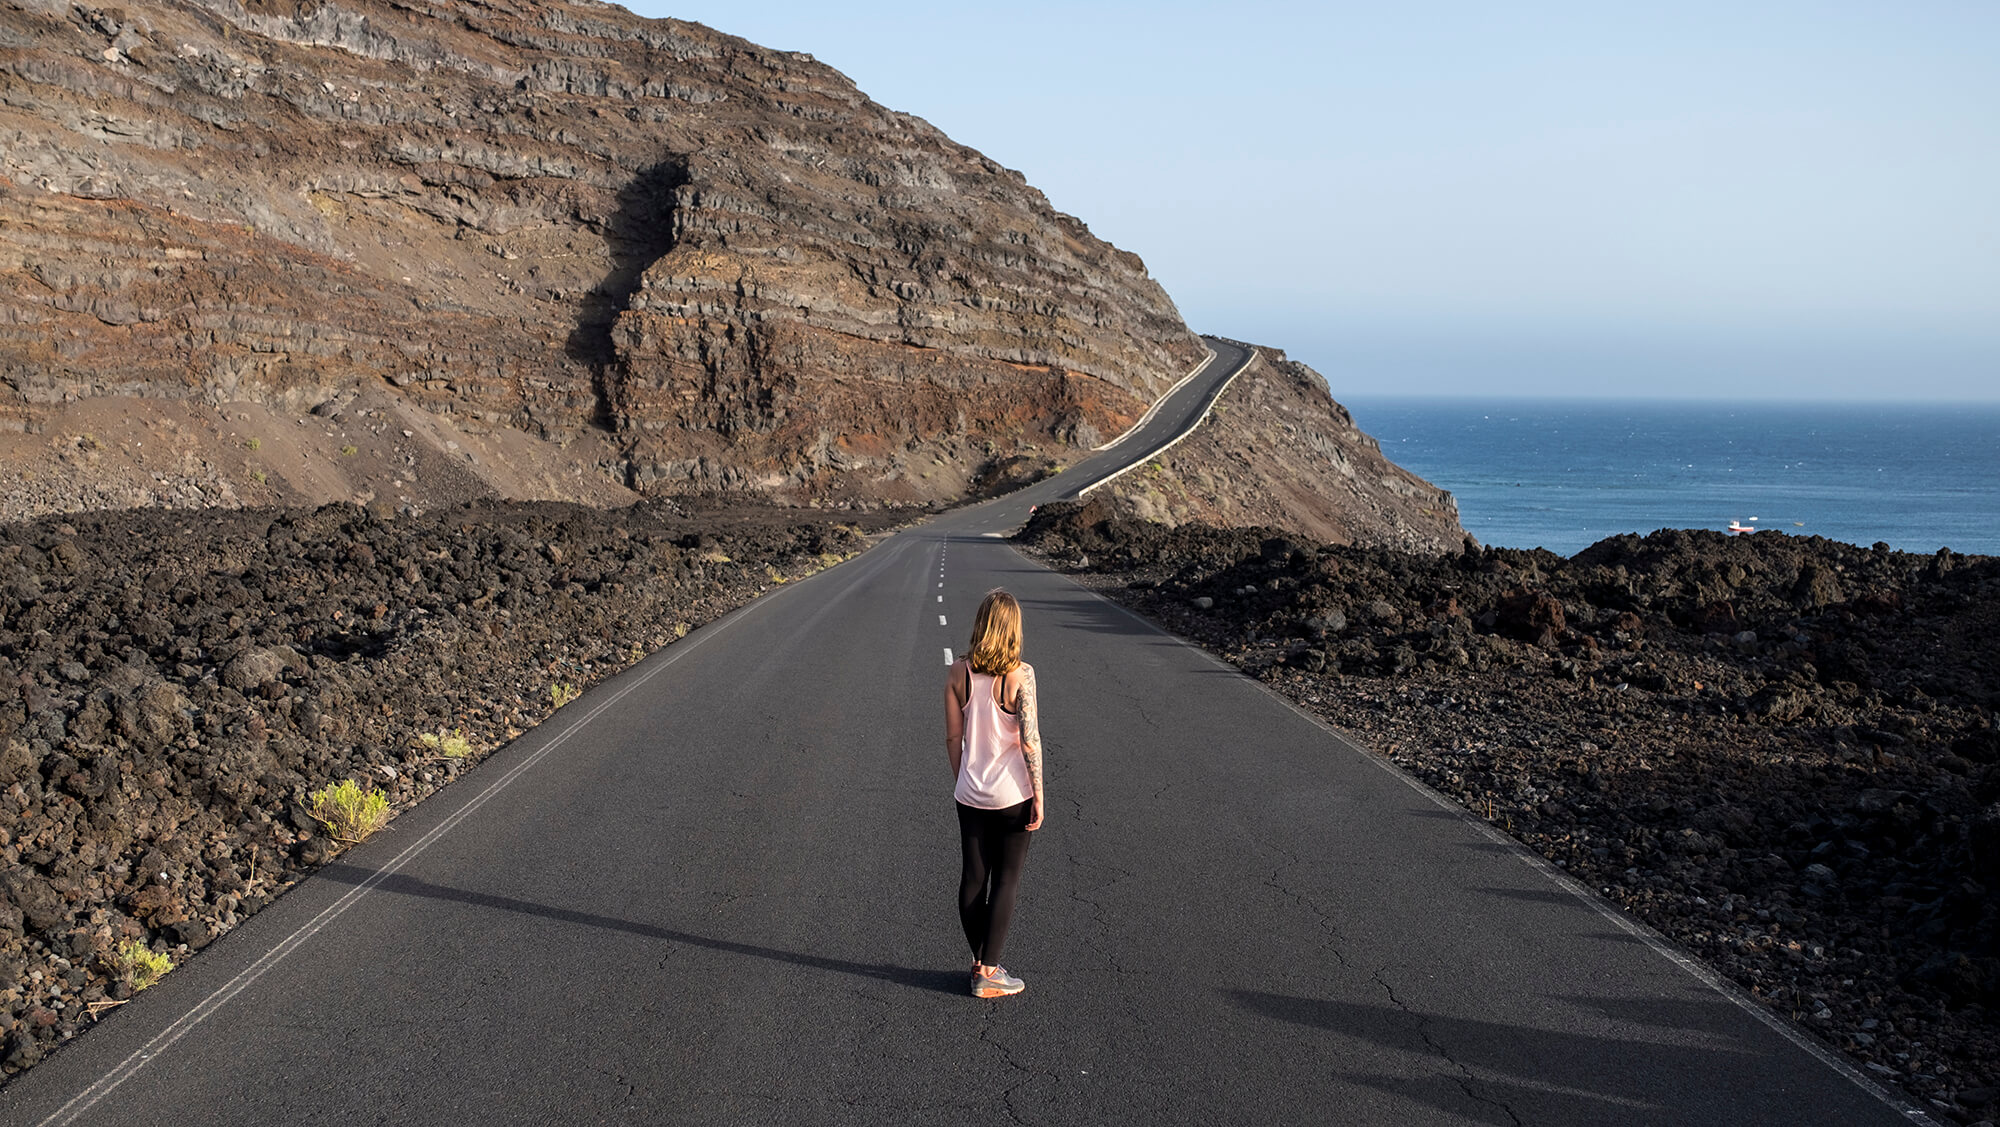 Carretera espectacular en la isla de La Palma